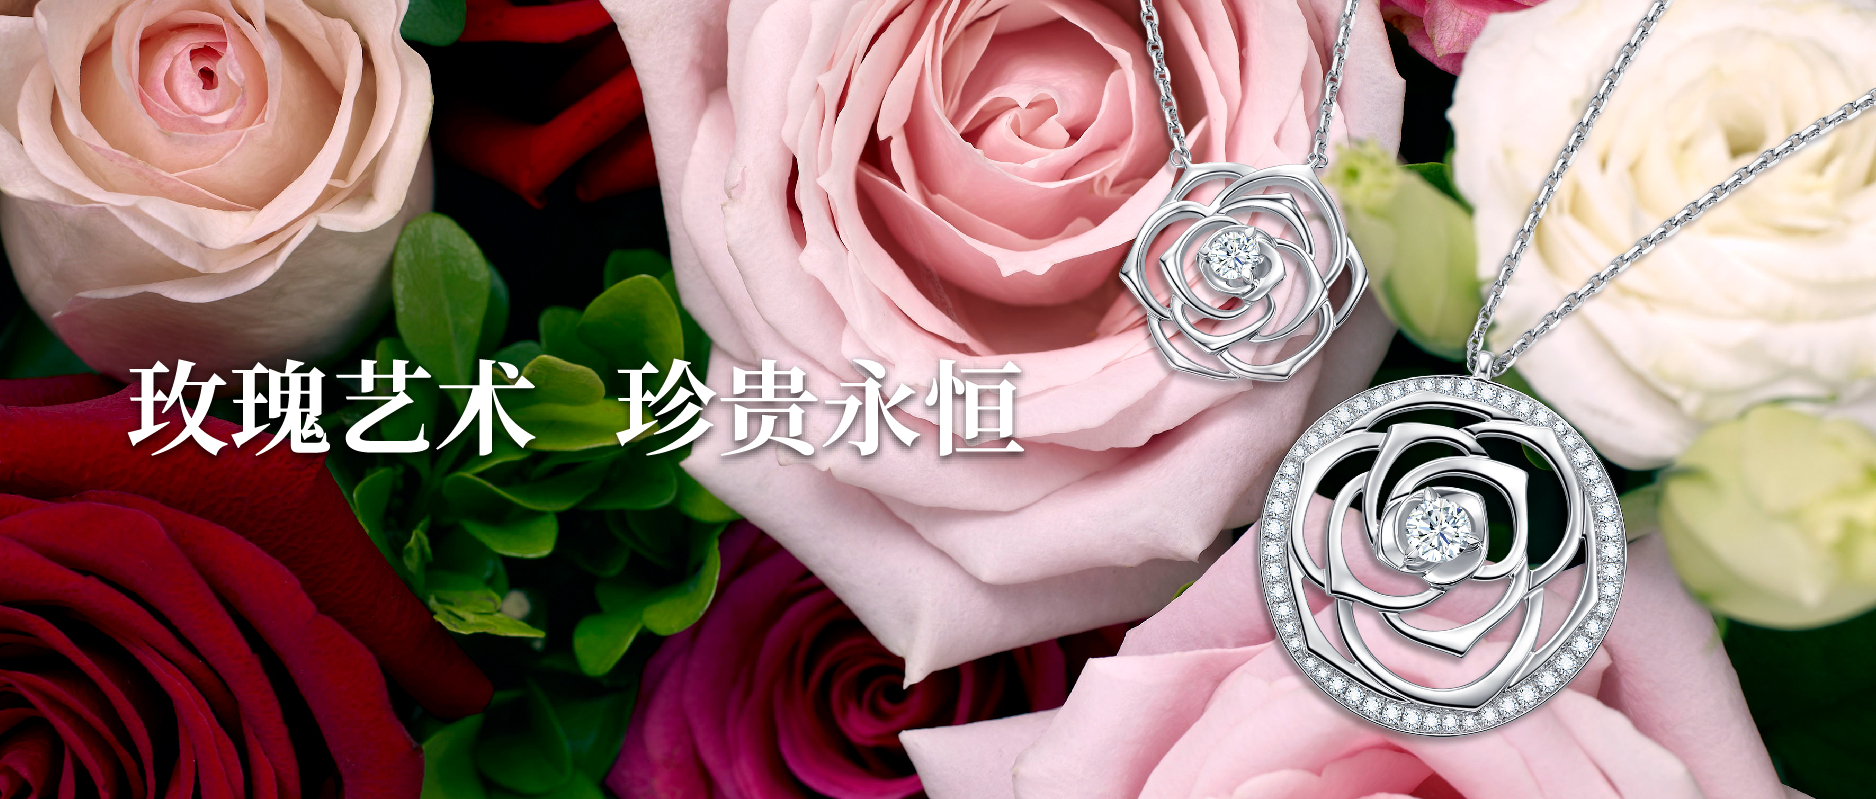 芭莎珠宝&艺术家赵娜 | 浪漫玫瑰灵感，璀璨钻石演绎珠宝艺术的精湛造诣